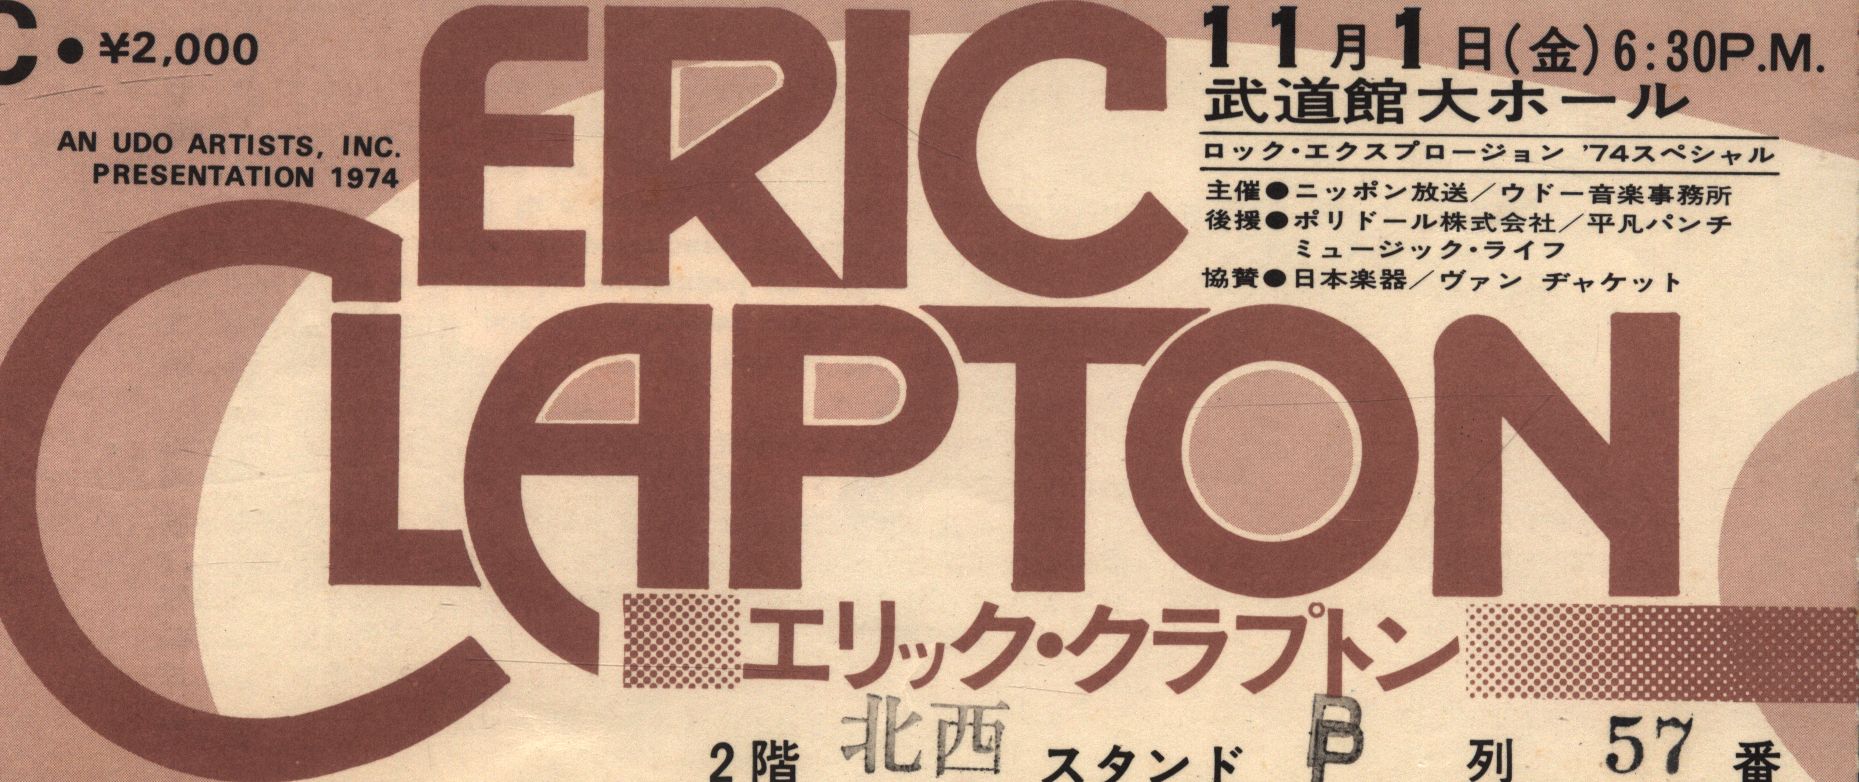 日本武道館 Eric Clapton エリック・クラプトン 1974/11/01 チケット半券